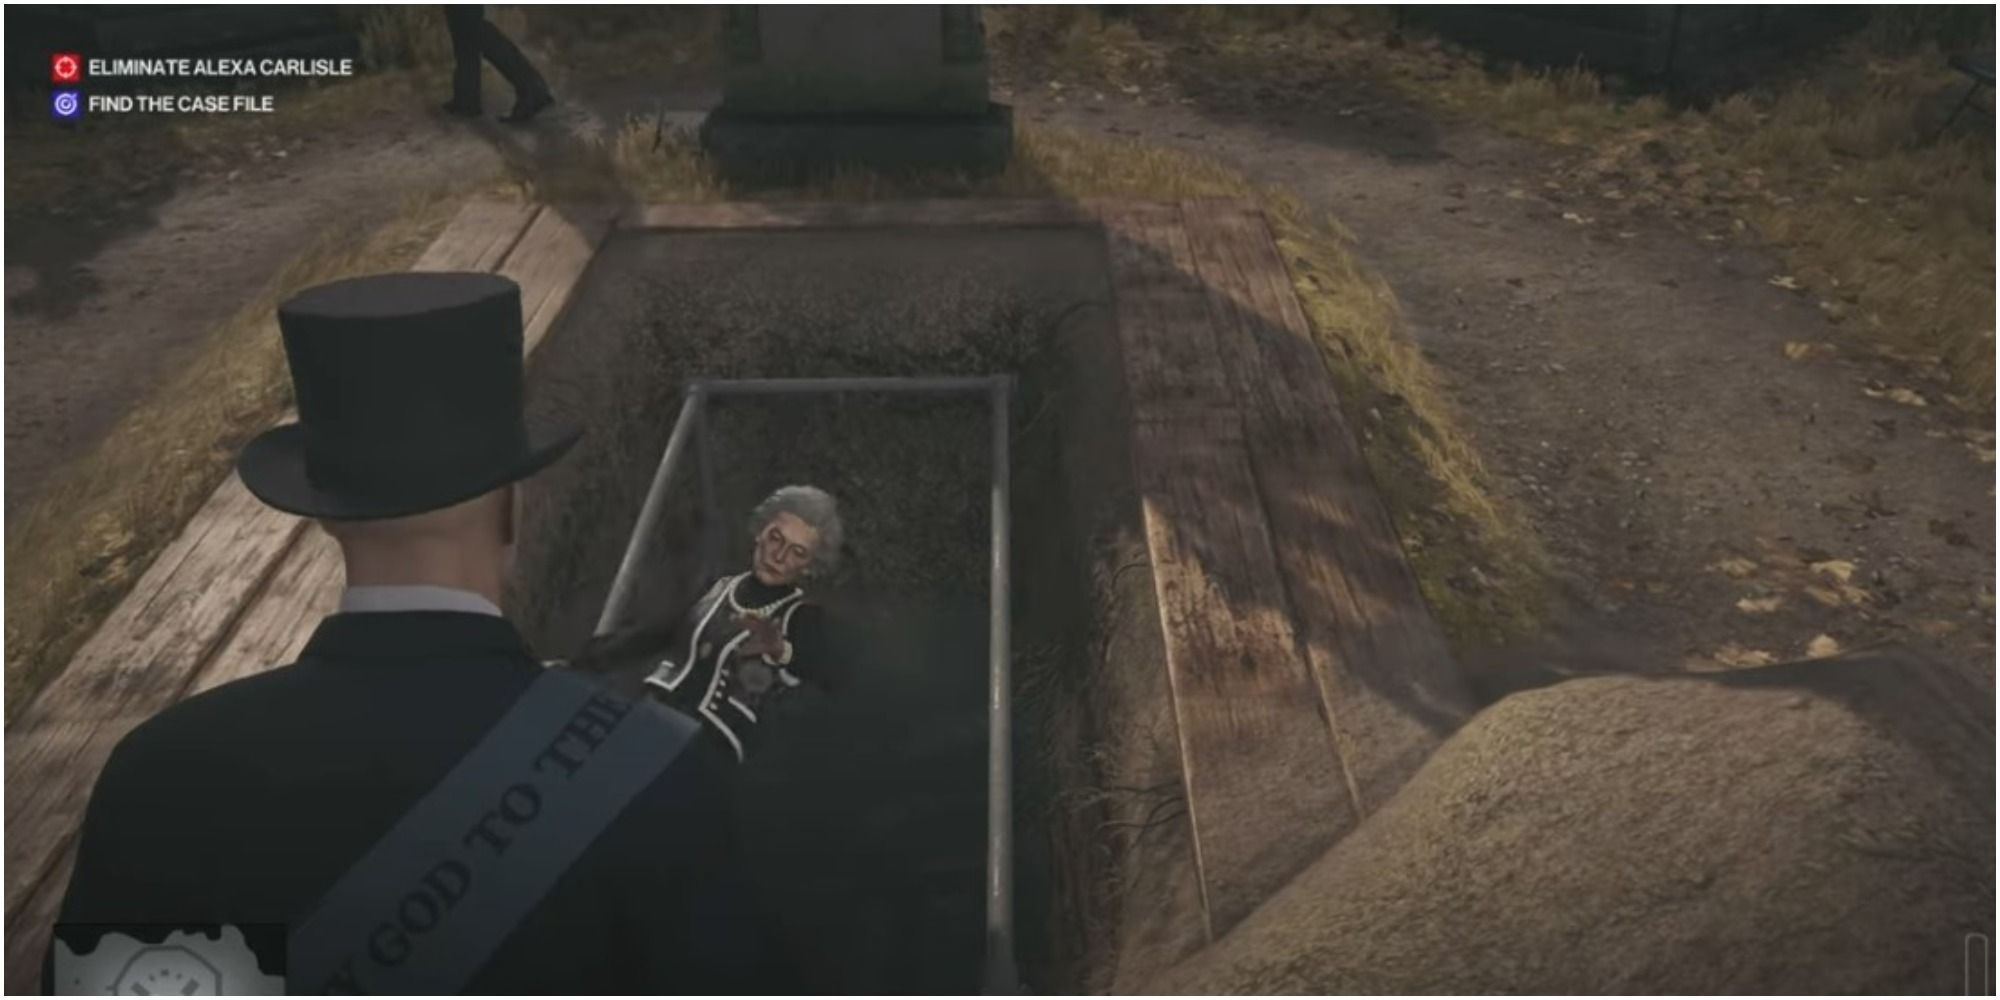 Hitman 3 Kicking Alexa Carlisle Into Her Own Grave